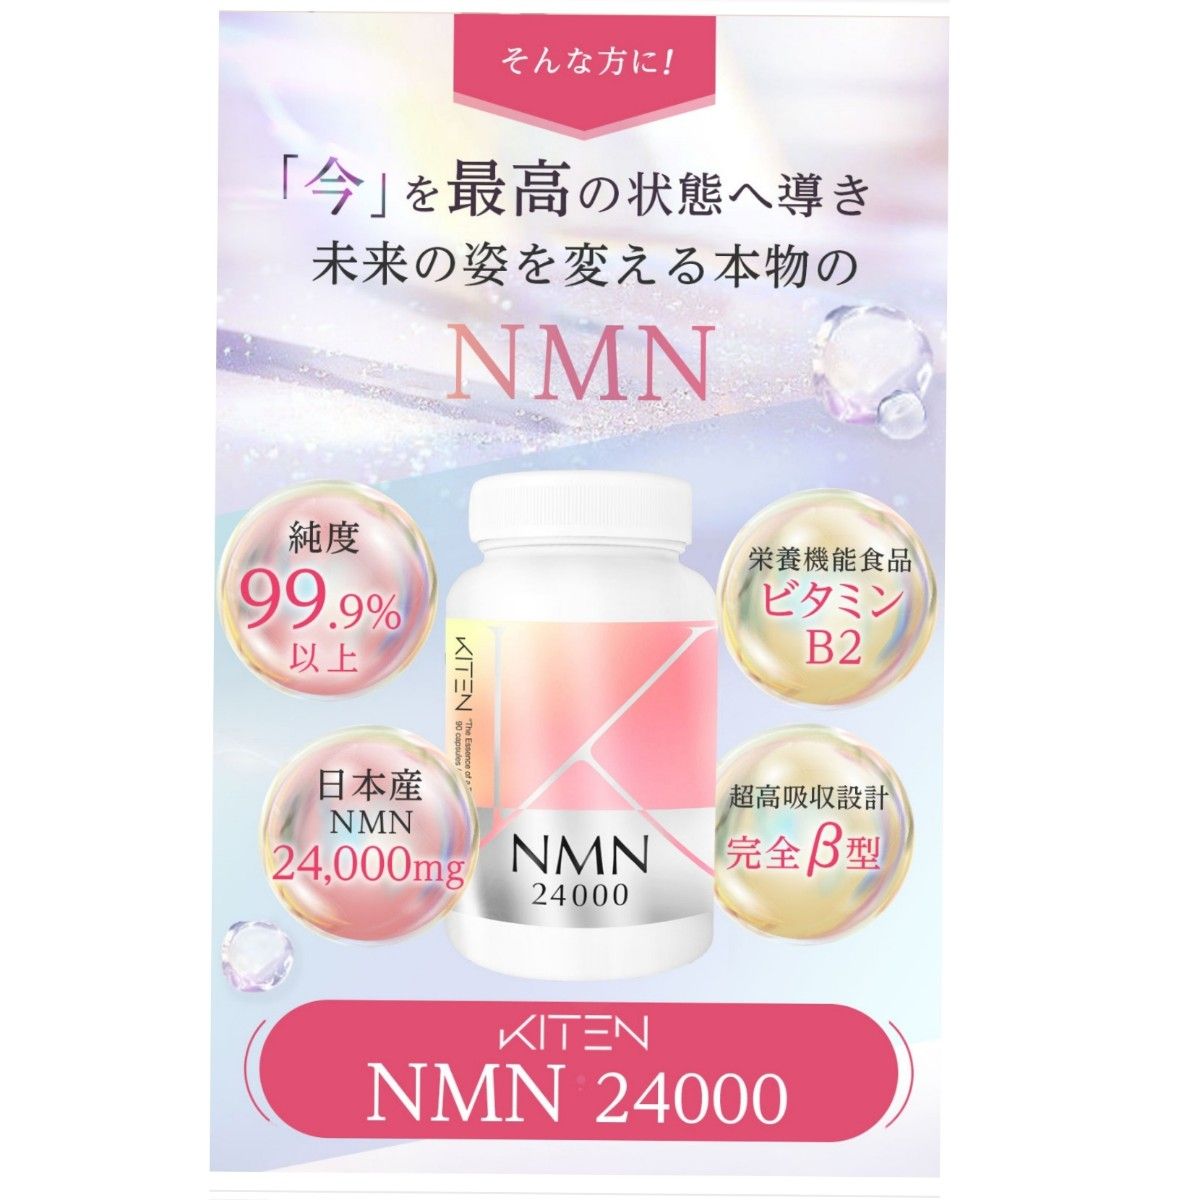 NMN サプリ 24000mg ナイアシン 高純度 サプリメント エイジングケア